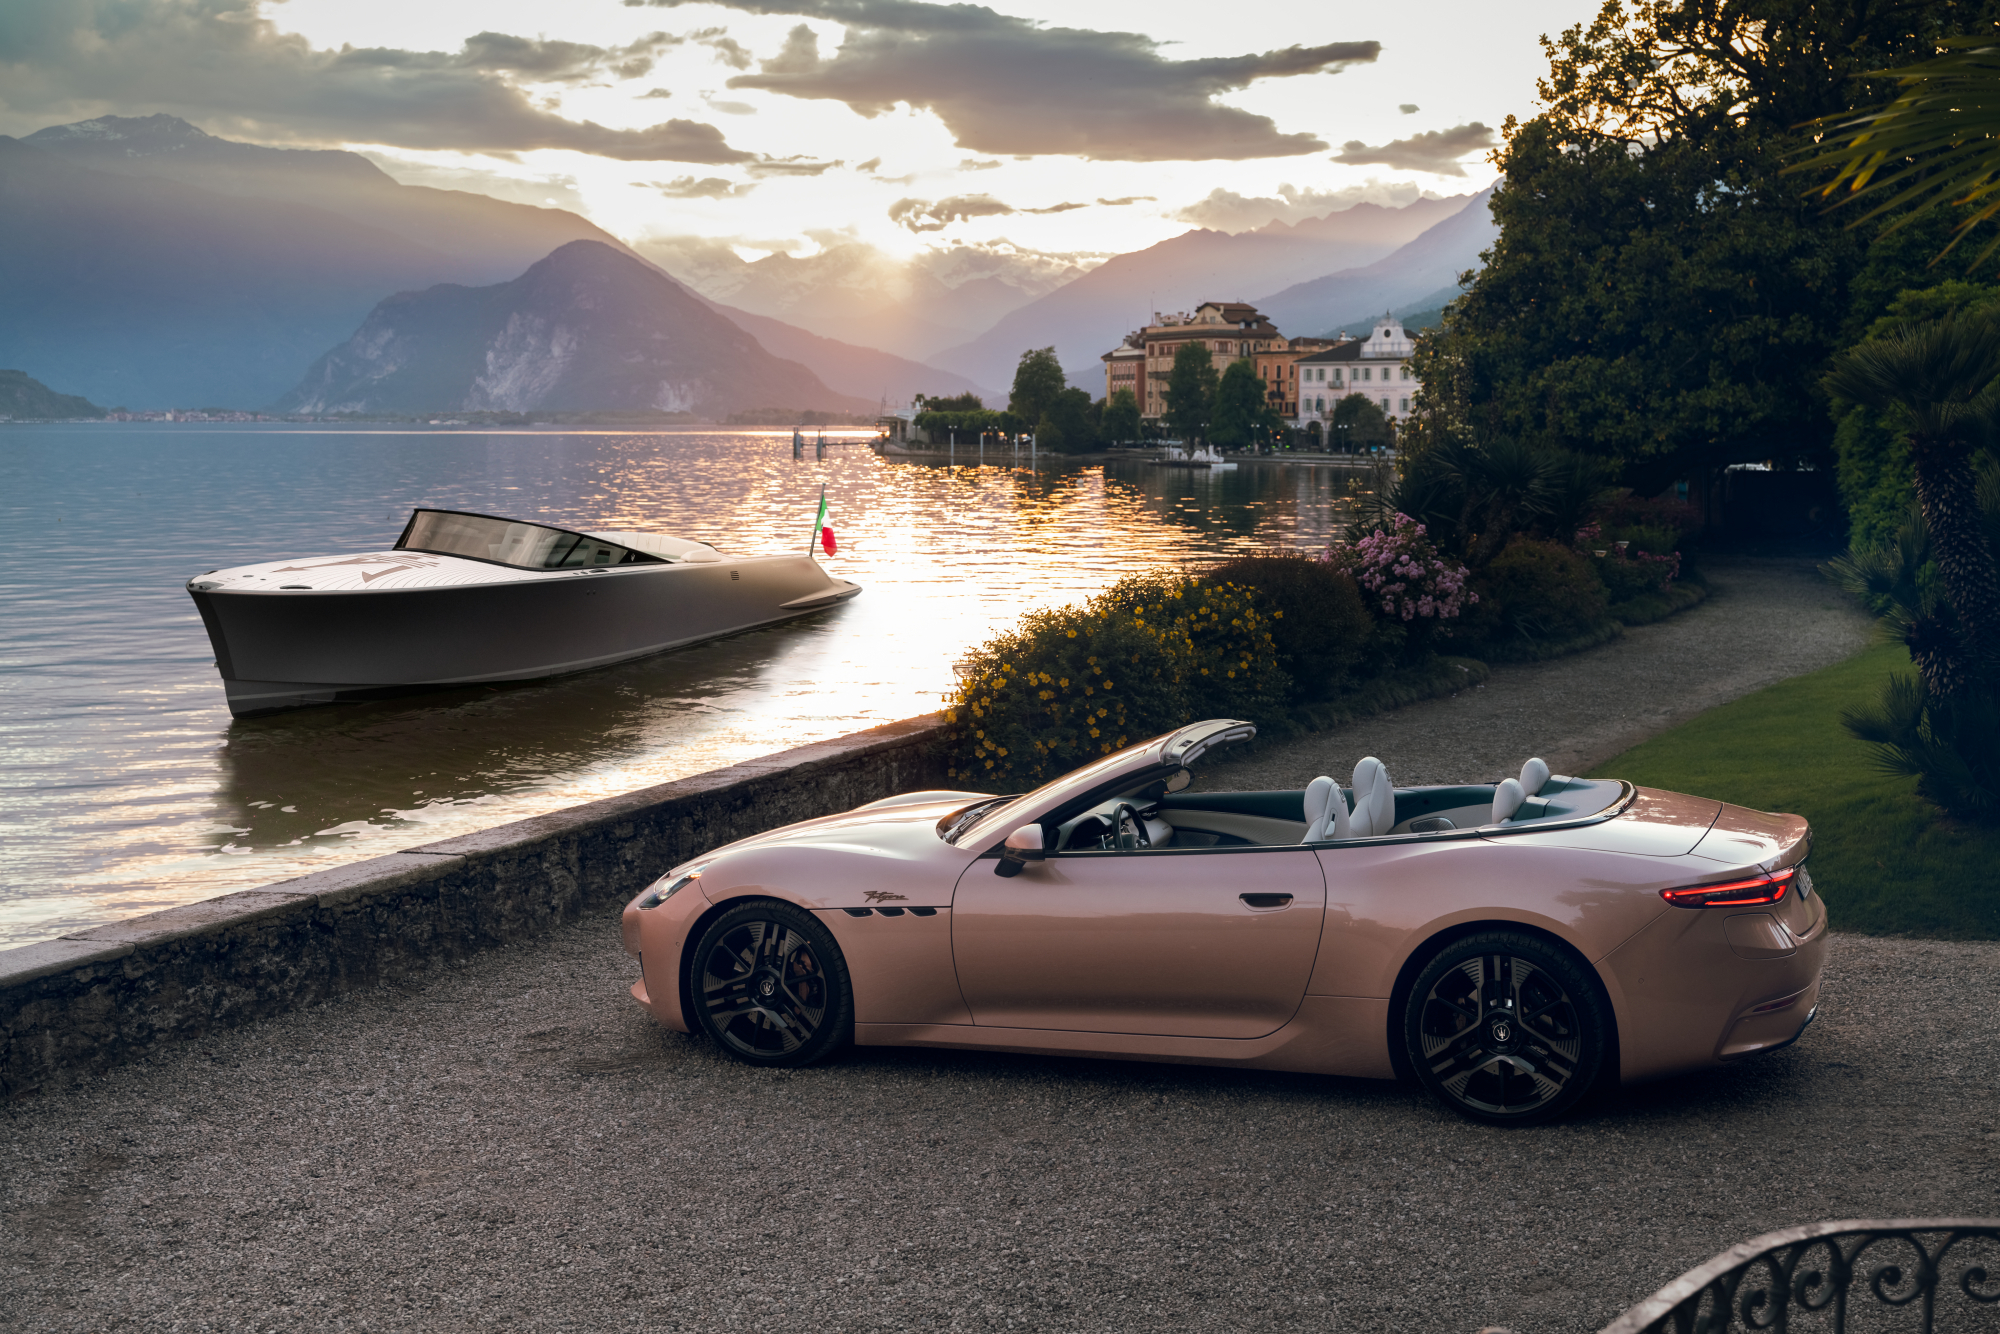 A Maserati GranCabrio Folgore in the foreground with a Maserati TRIDENTE luxury all-electric power boat on Lake Maggiore.